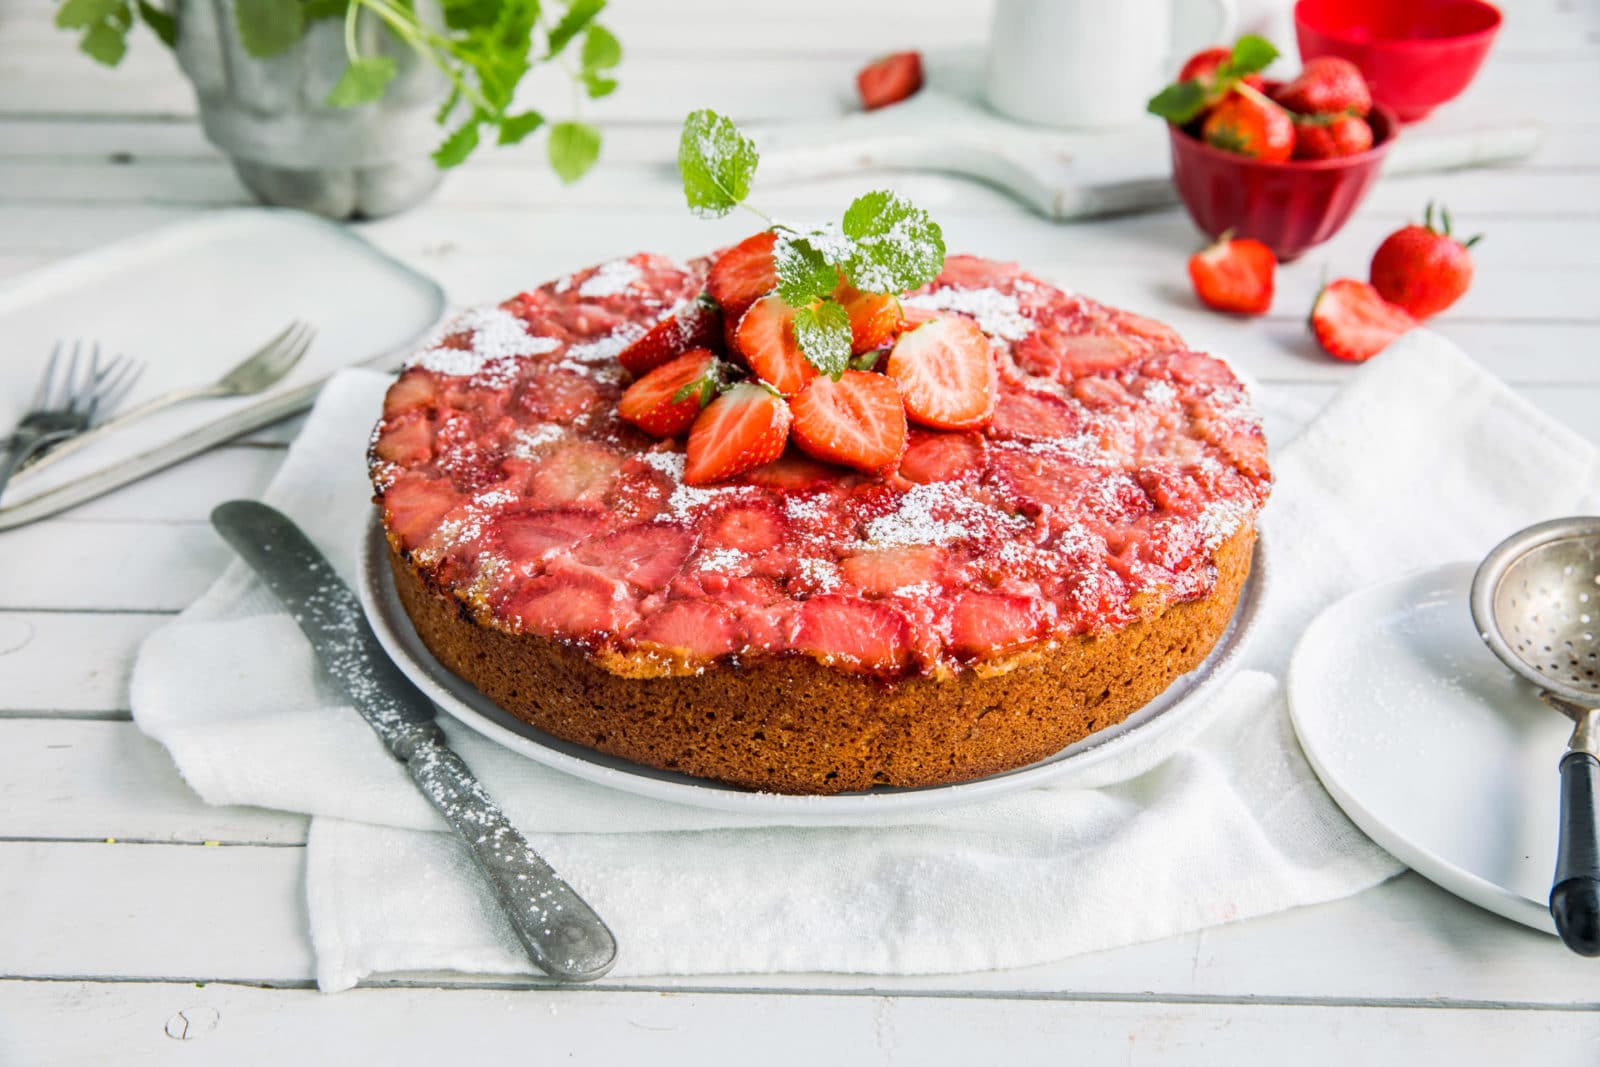 Opp ned-kake med jordbær